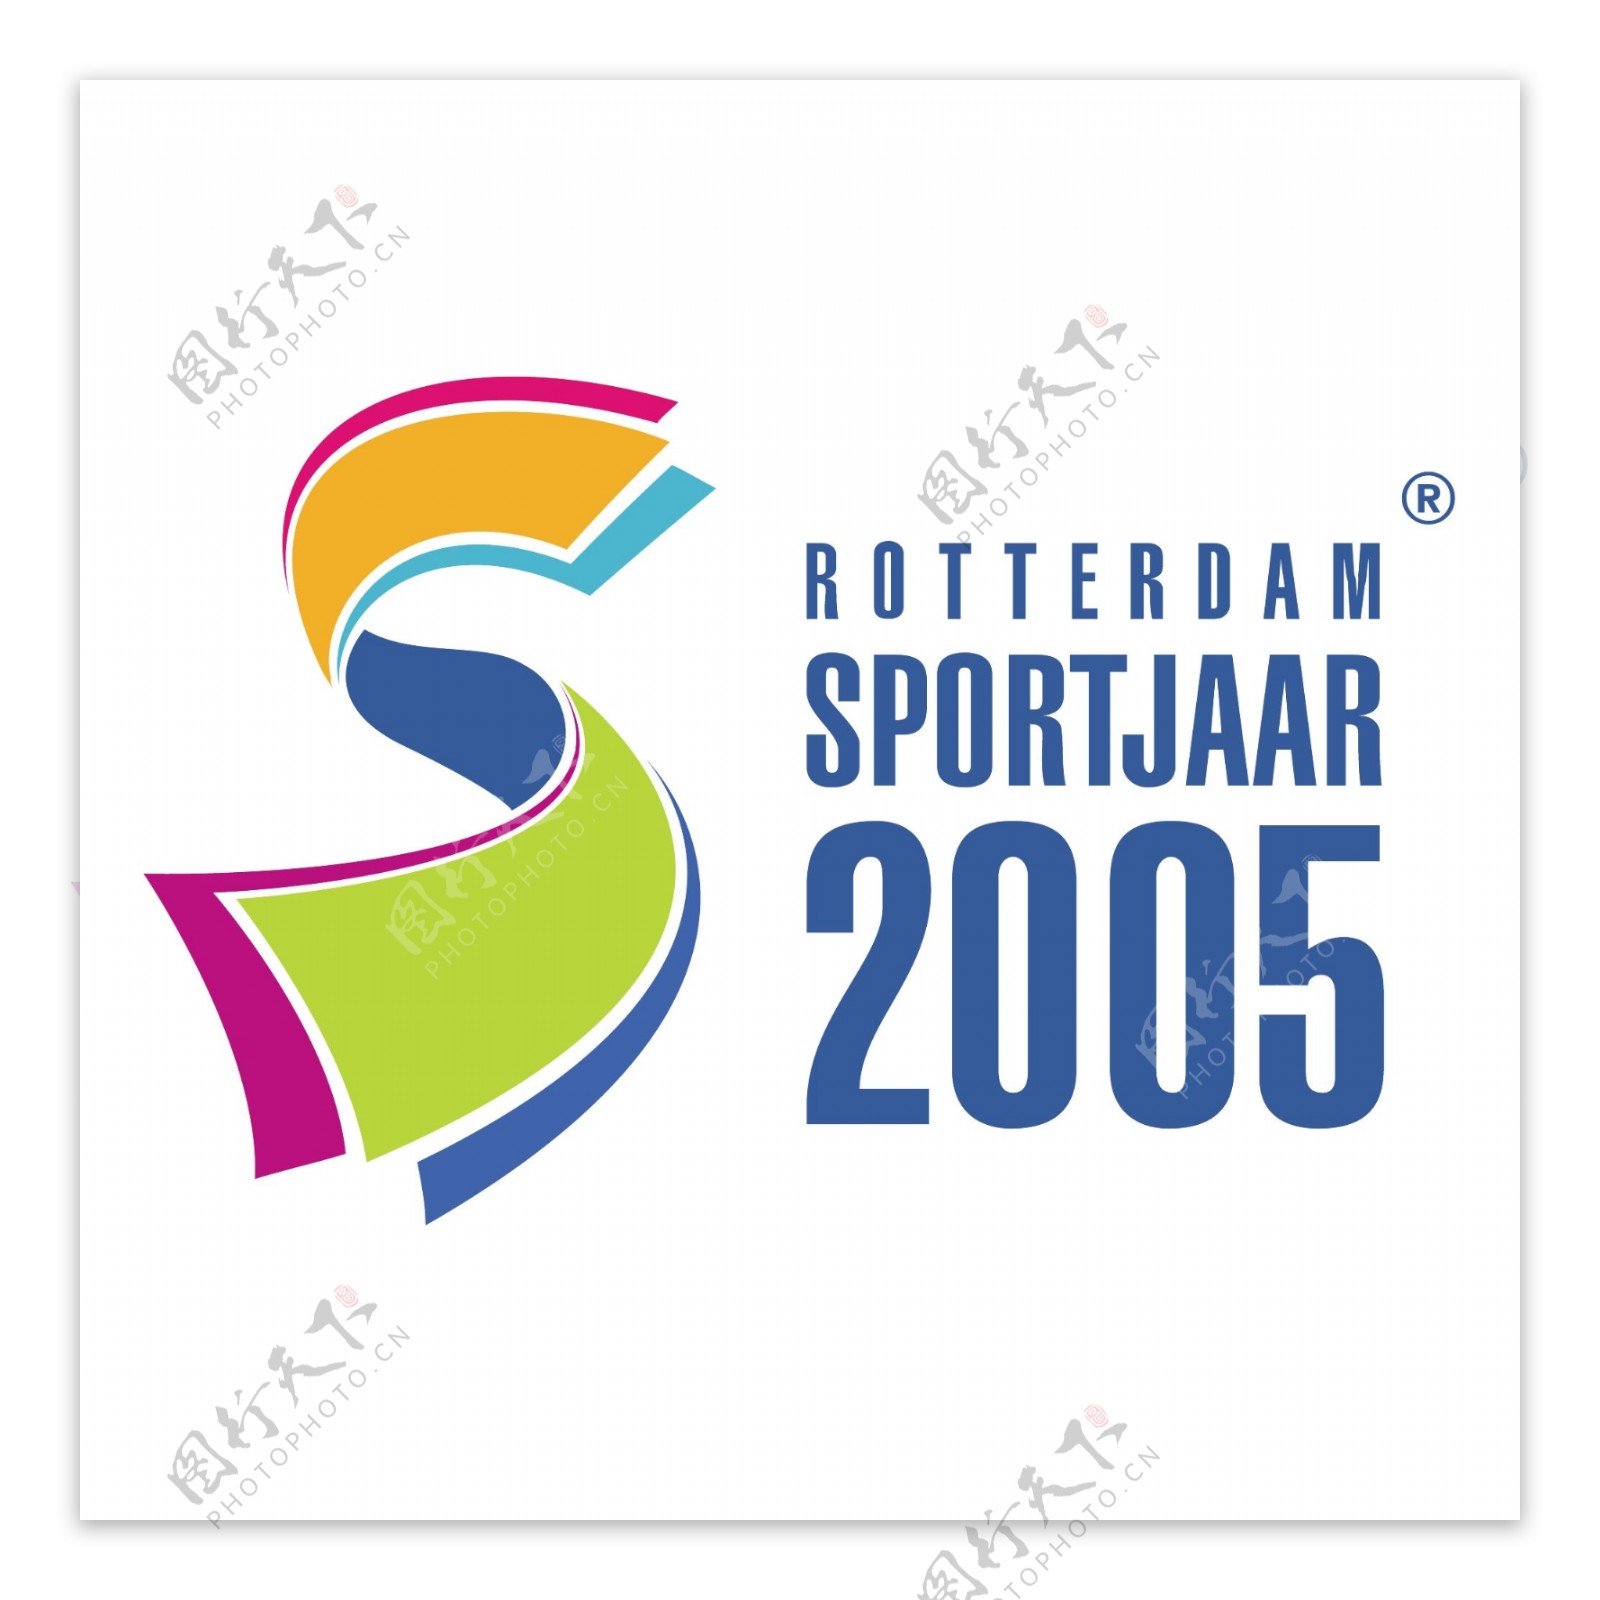 鹿特丹sportjaar2005